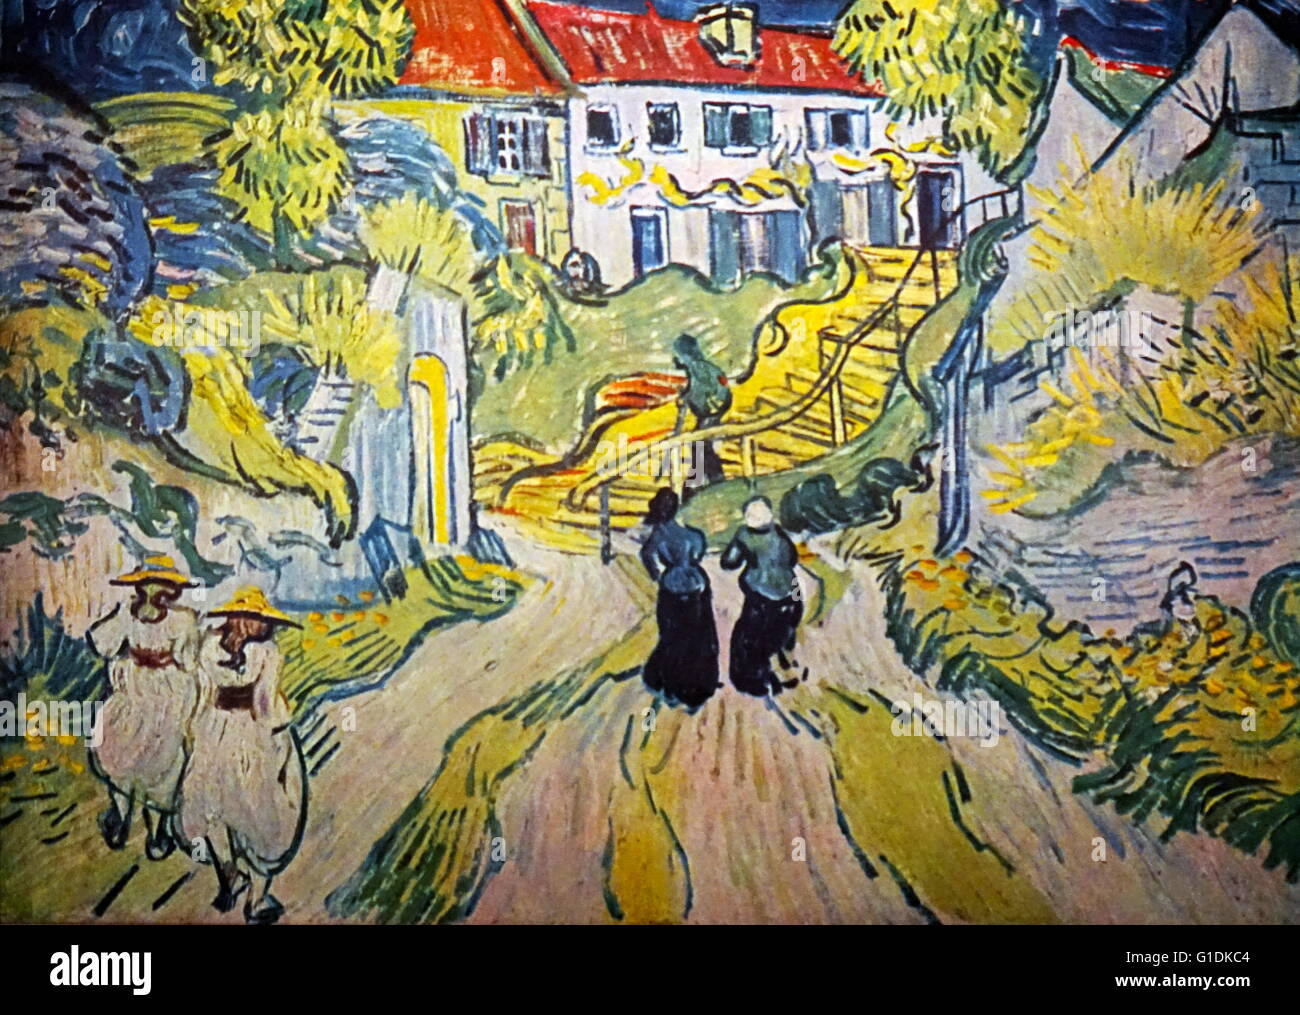 Vincent van Gogh (1853-1890) peintre post-impressionniste. Escalier à Auvers, juillet 1890, huile sur toile Banque D'Images